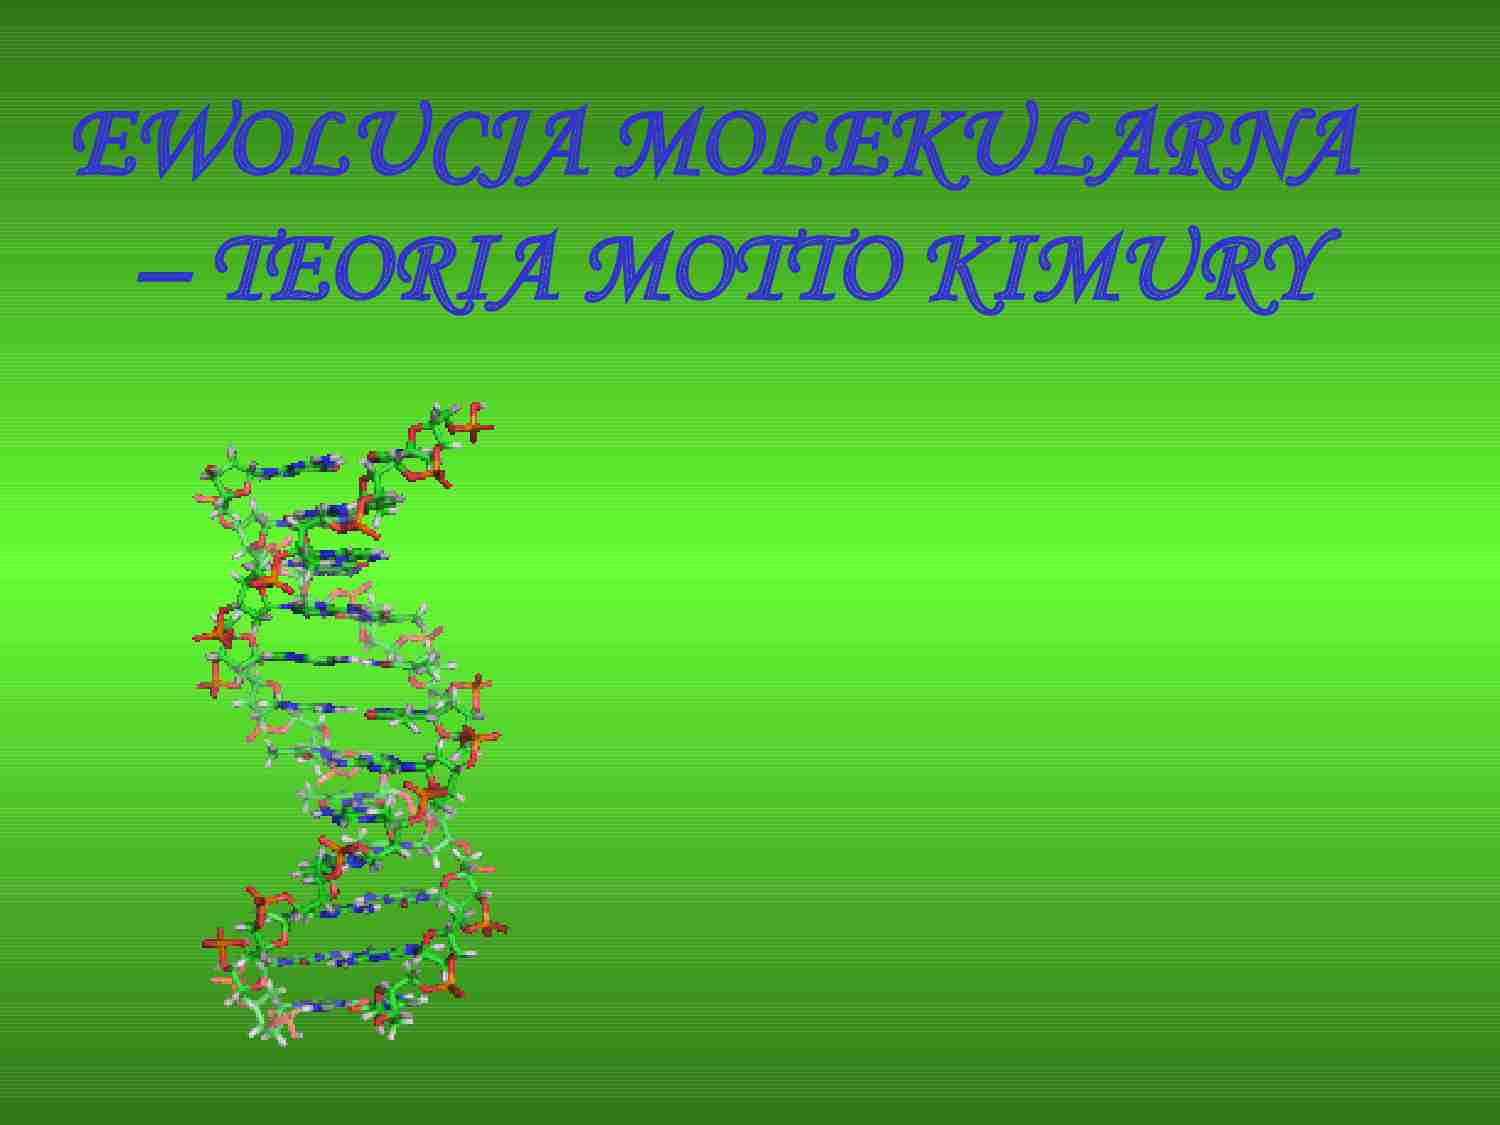 Ewolucja molekularna - ewolucjonizm - strona 1